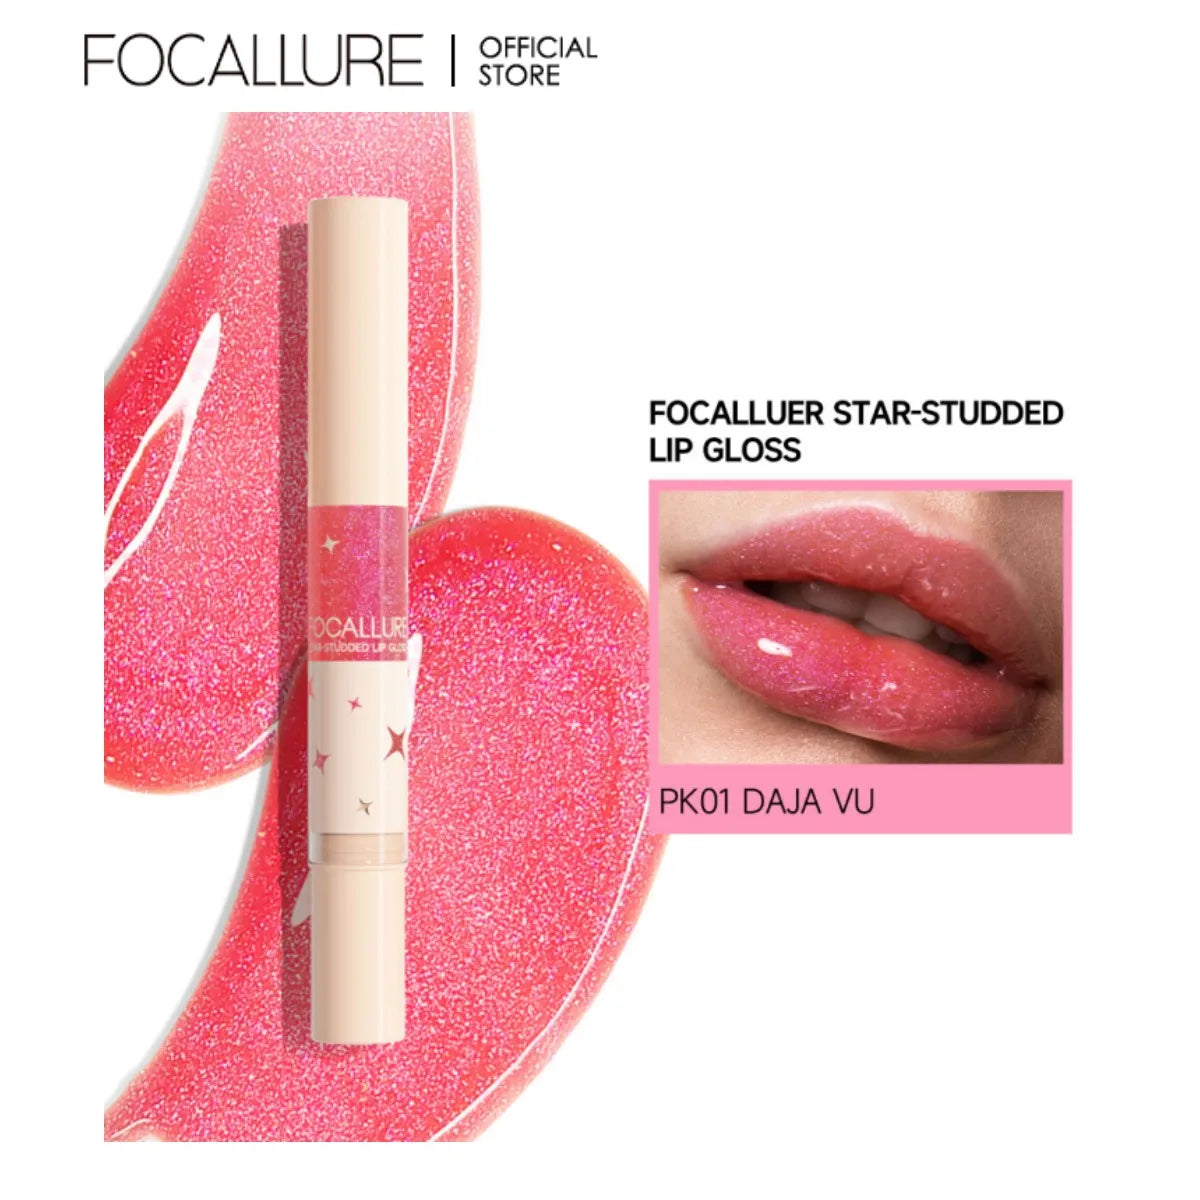 Focallure Star-Studded Lip Gloss